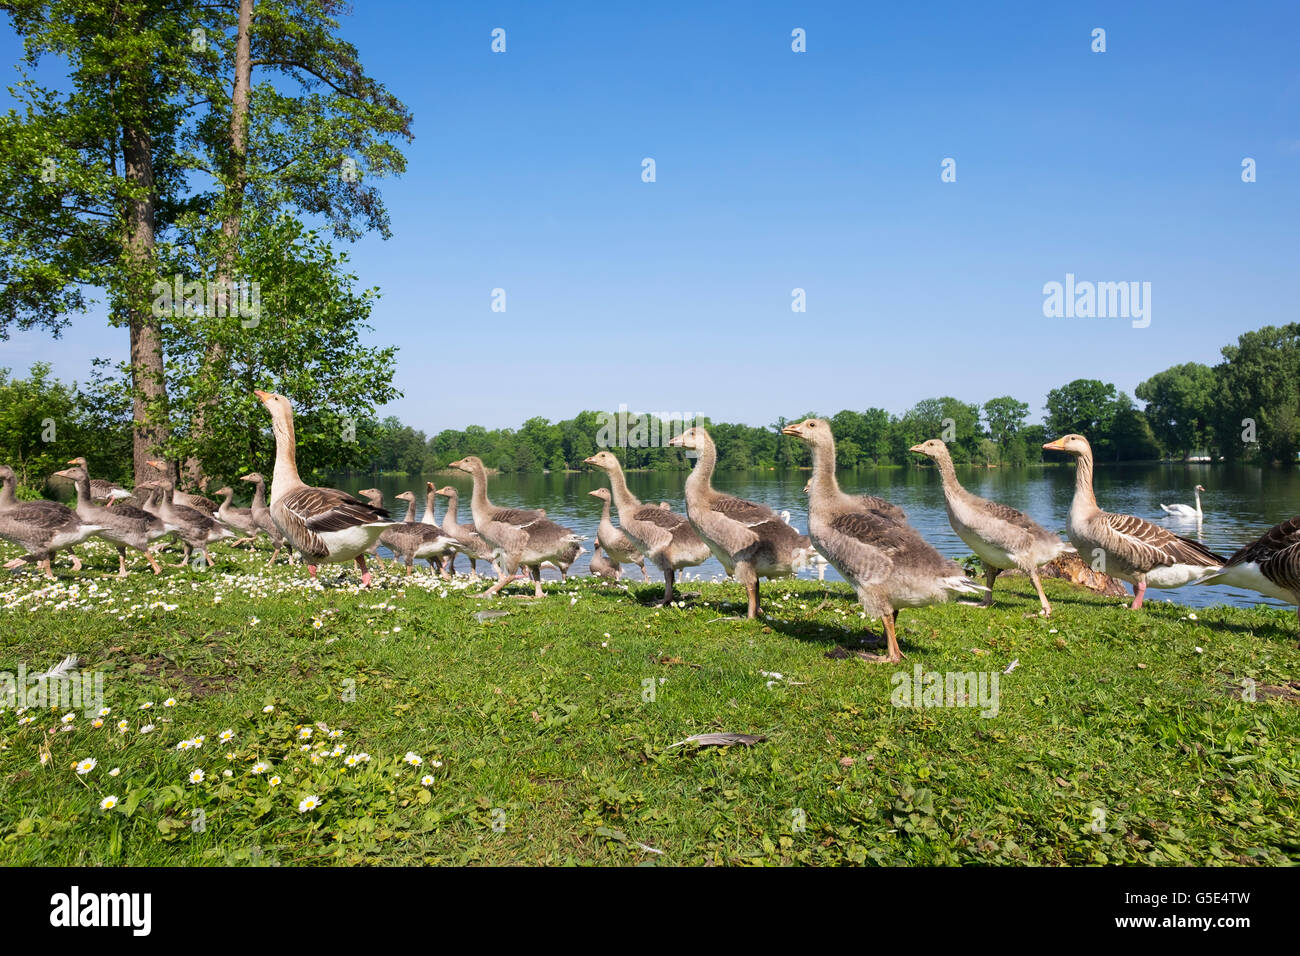 Family of Geese, Greylag Goose (Anser anser) with a lot of squabs, Kleiner Dutzendteich, Volkspark Dutzendteich, Nuremberg Stock Photo